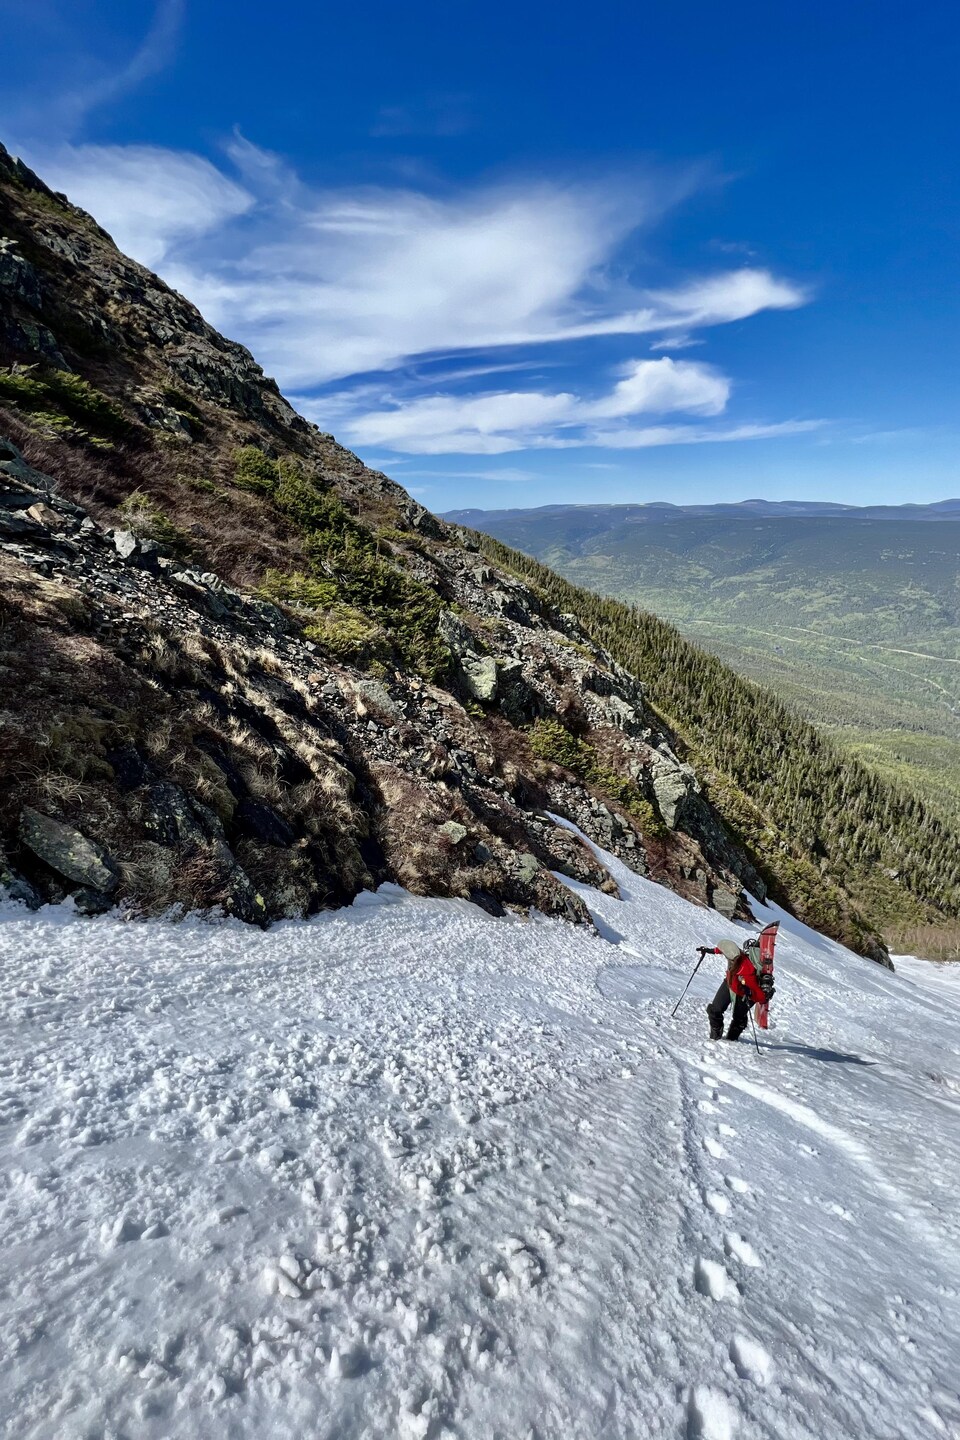 Un skieur fait l'ascension d'une piste enneigée en été.